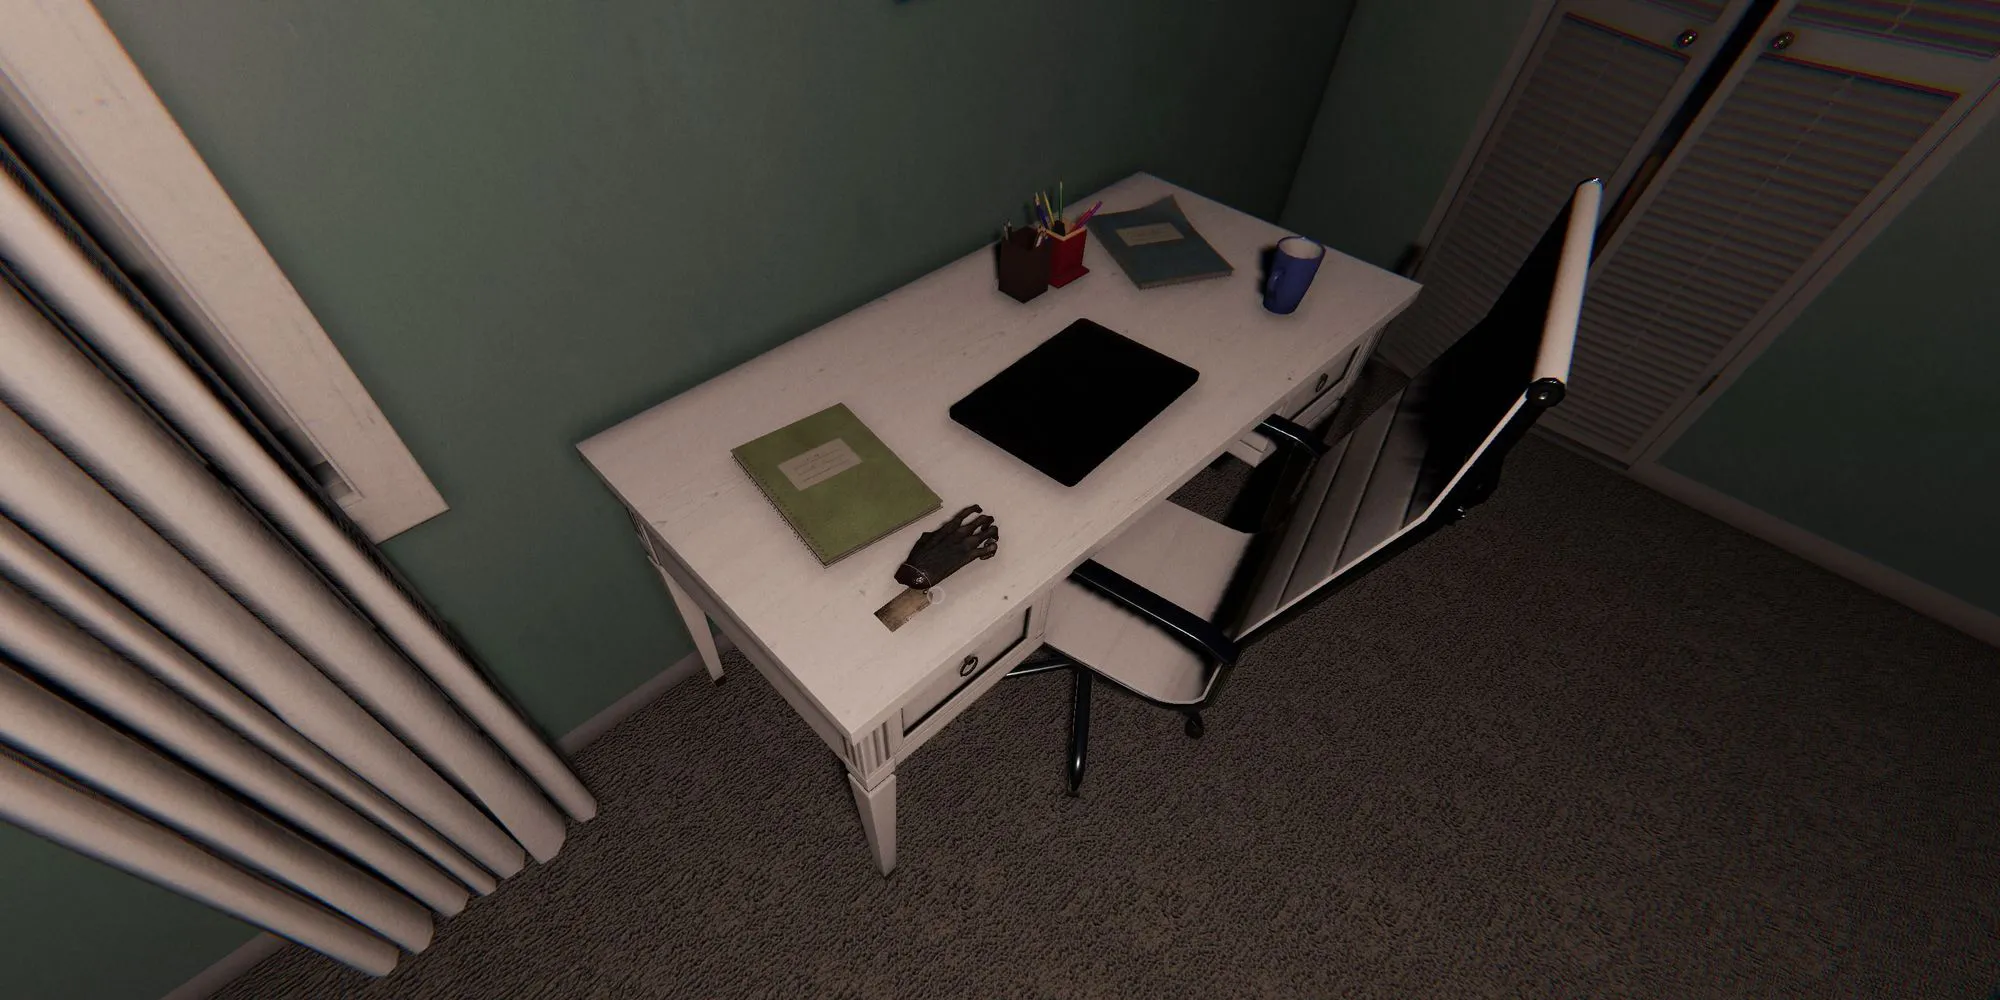 Изображение показывает обезьянью лапу на белом столе рядом с ноутбуком и зеленой книгой в Ridgeview Court в игре Phasmophobia.